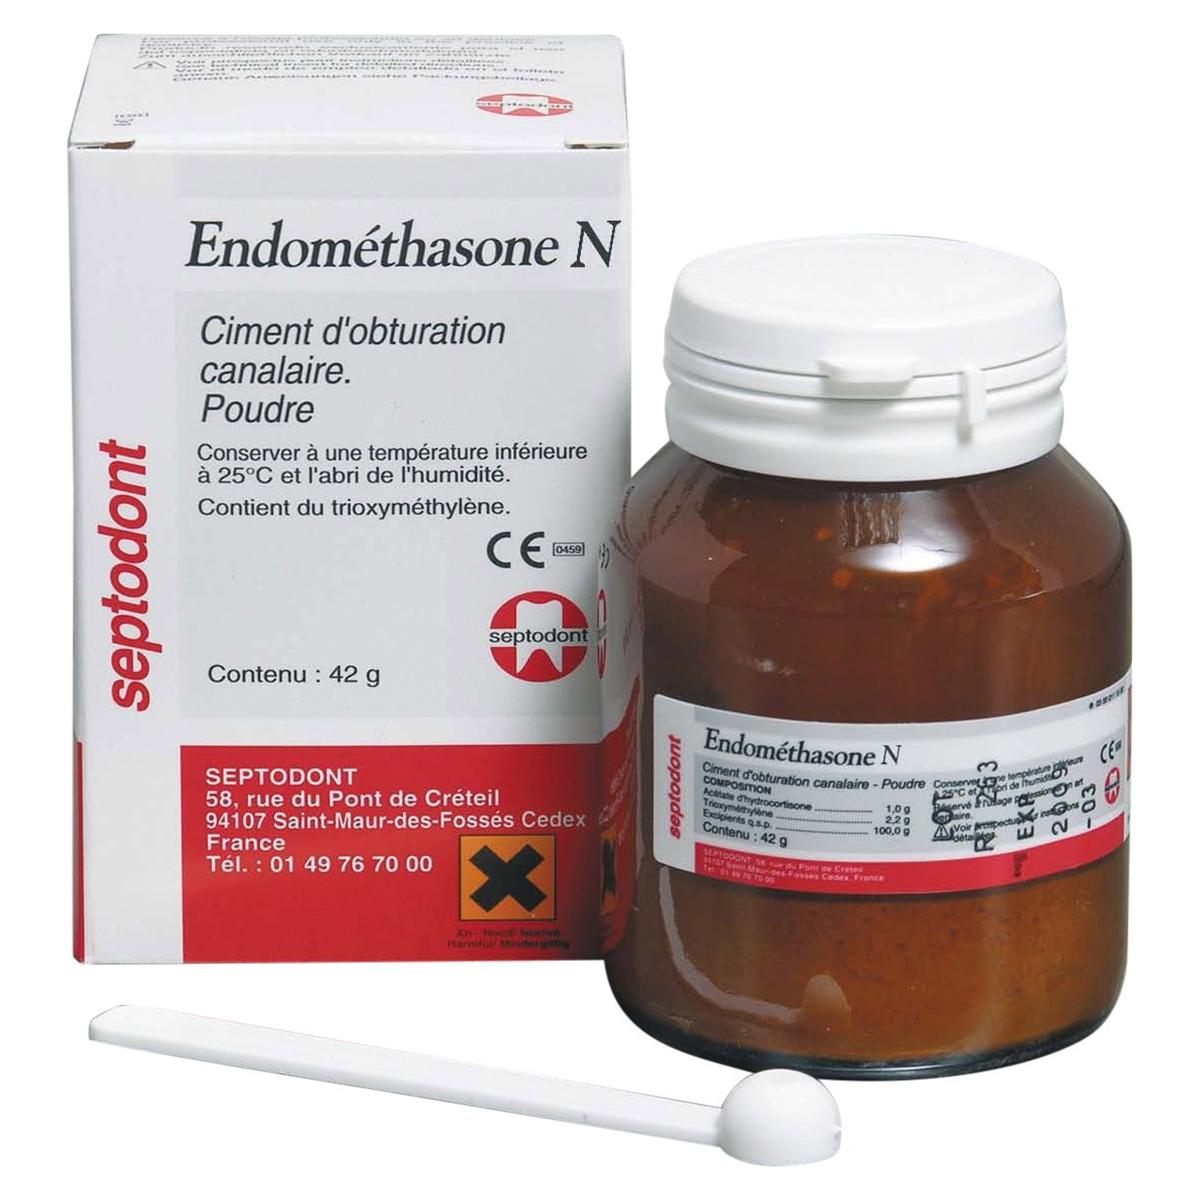 Endométhasone N - Einzelpackung - Pulver, Flasche 14 g